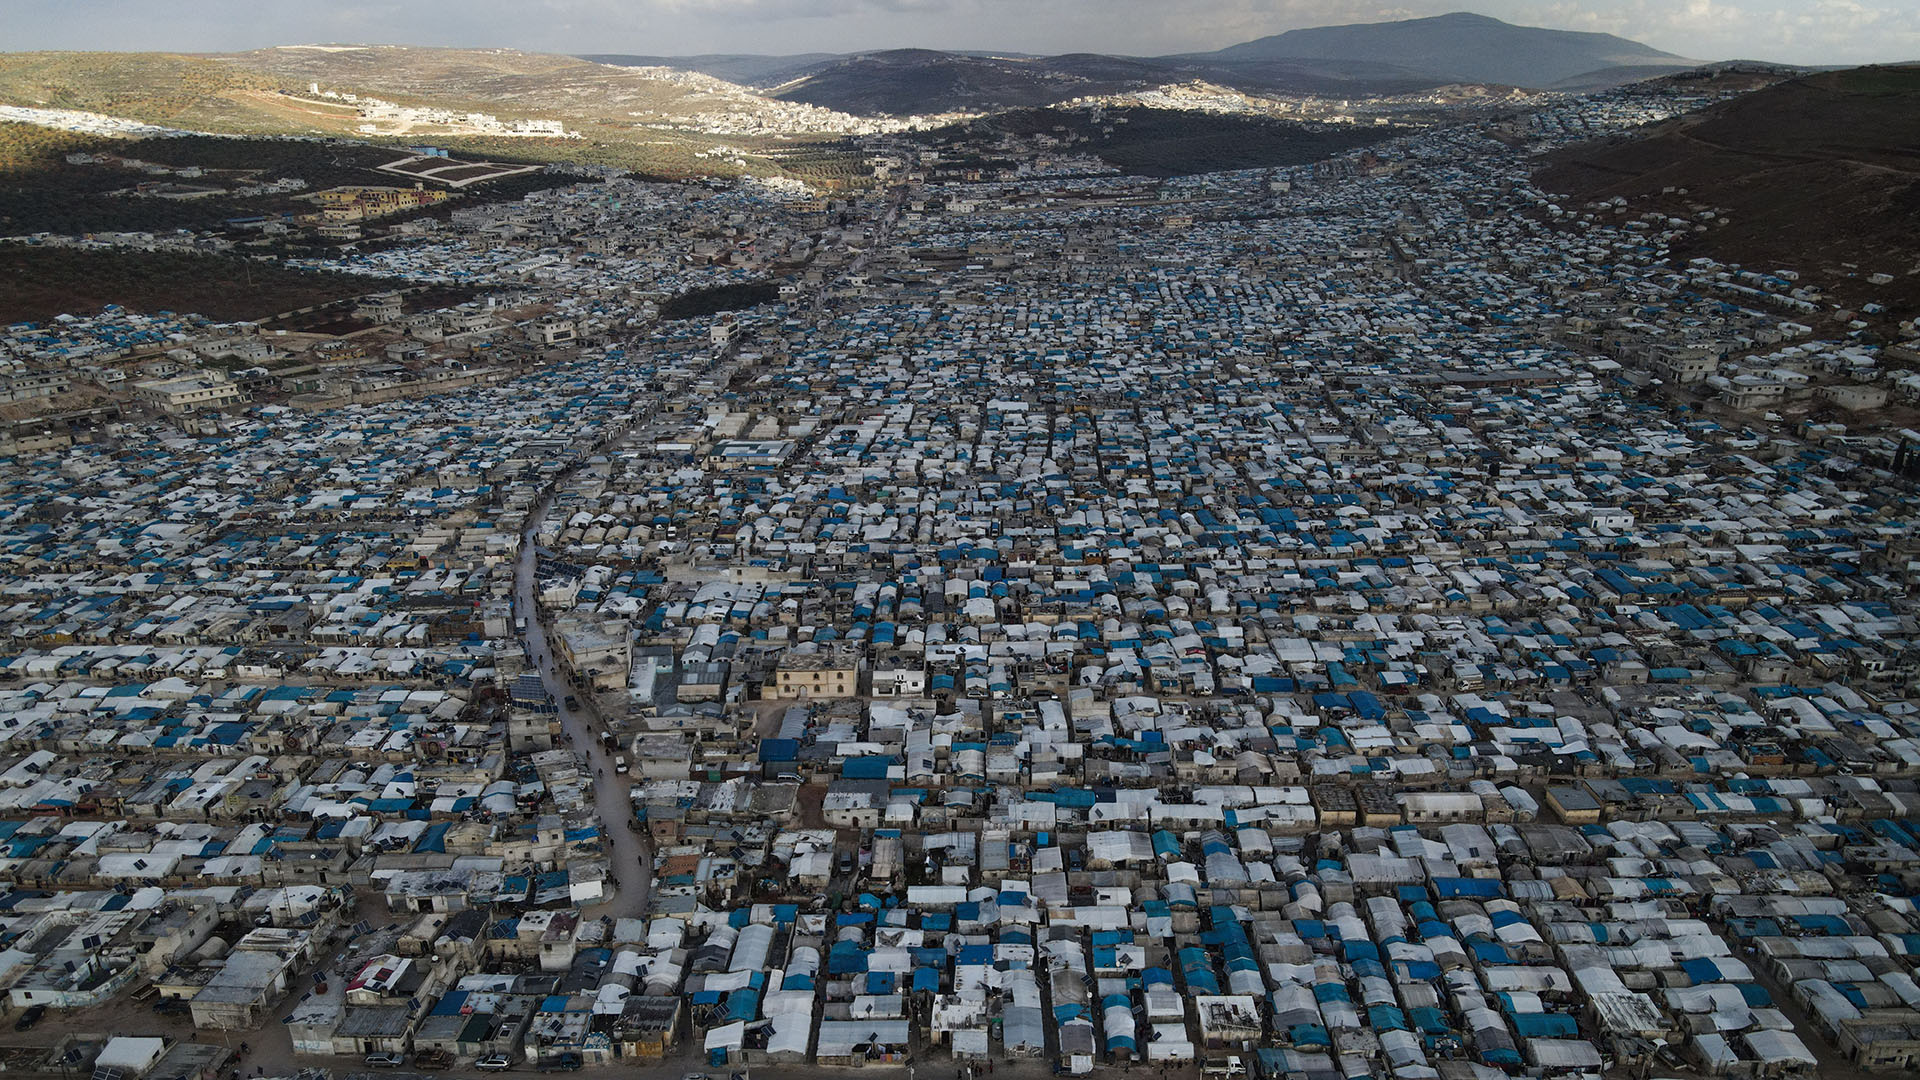 Zelte und Unterkünfte von Binnenflüchtlingen sind im Flüchtlingslager Atma an der türkisch-syrischen Grenze dicht aneinandergereiht. (Archivbild: 15.01.2021) | picture alliance/dpa